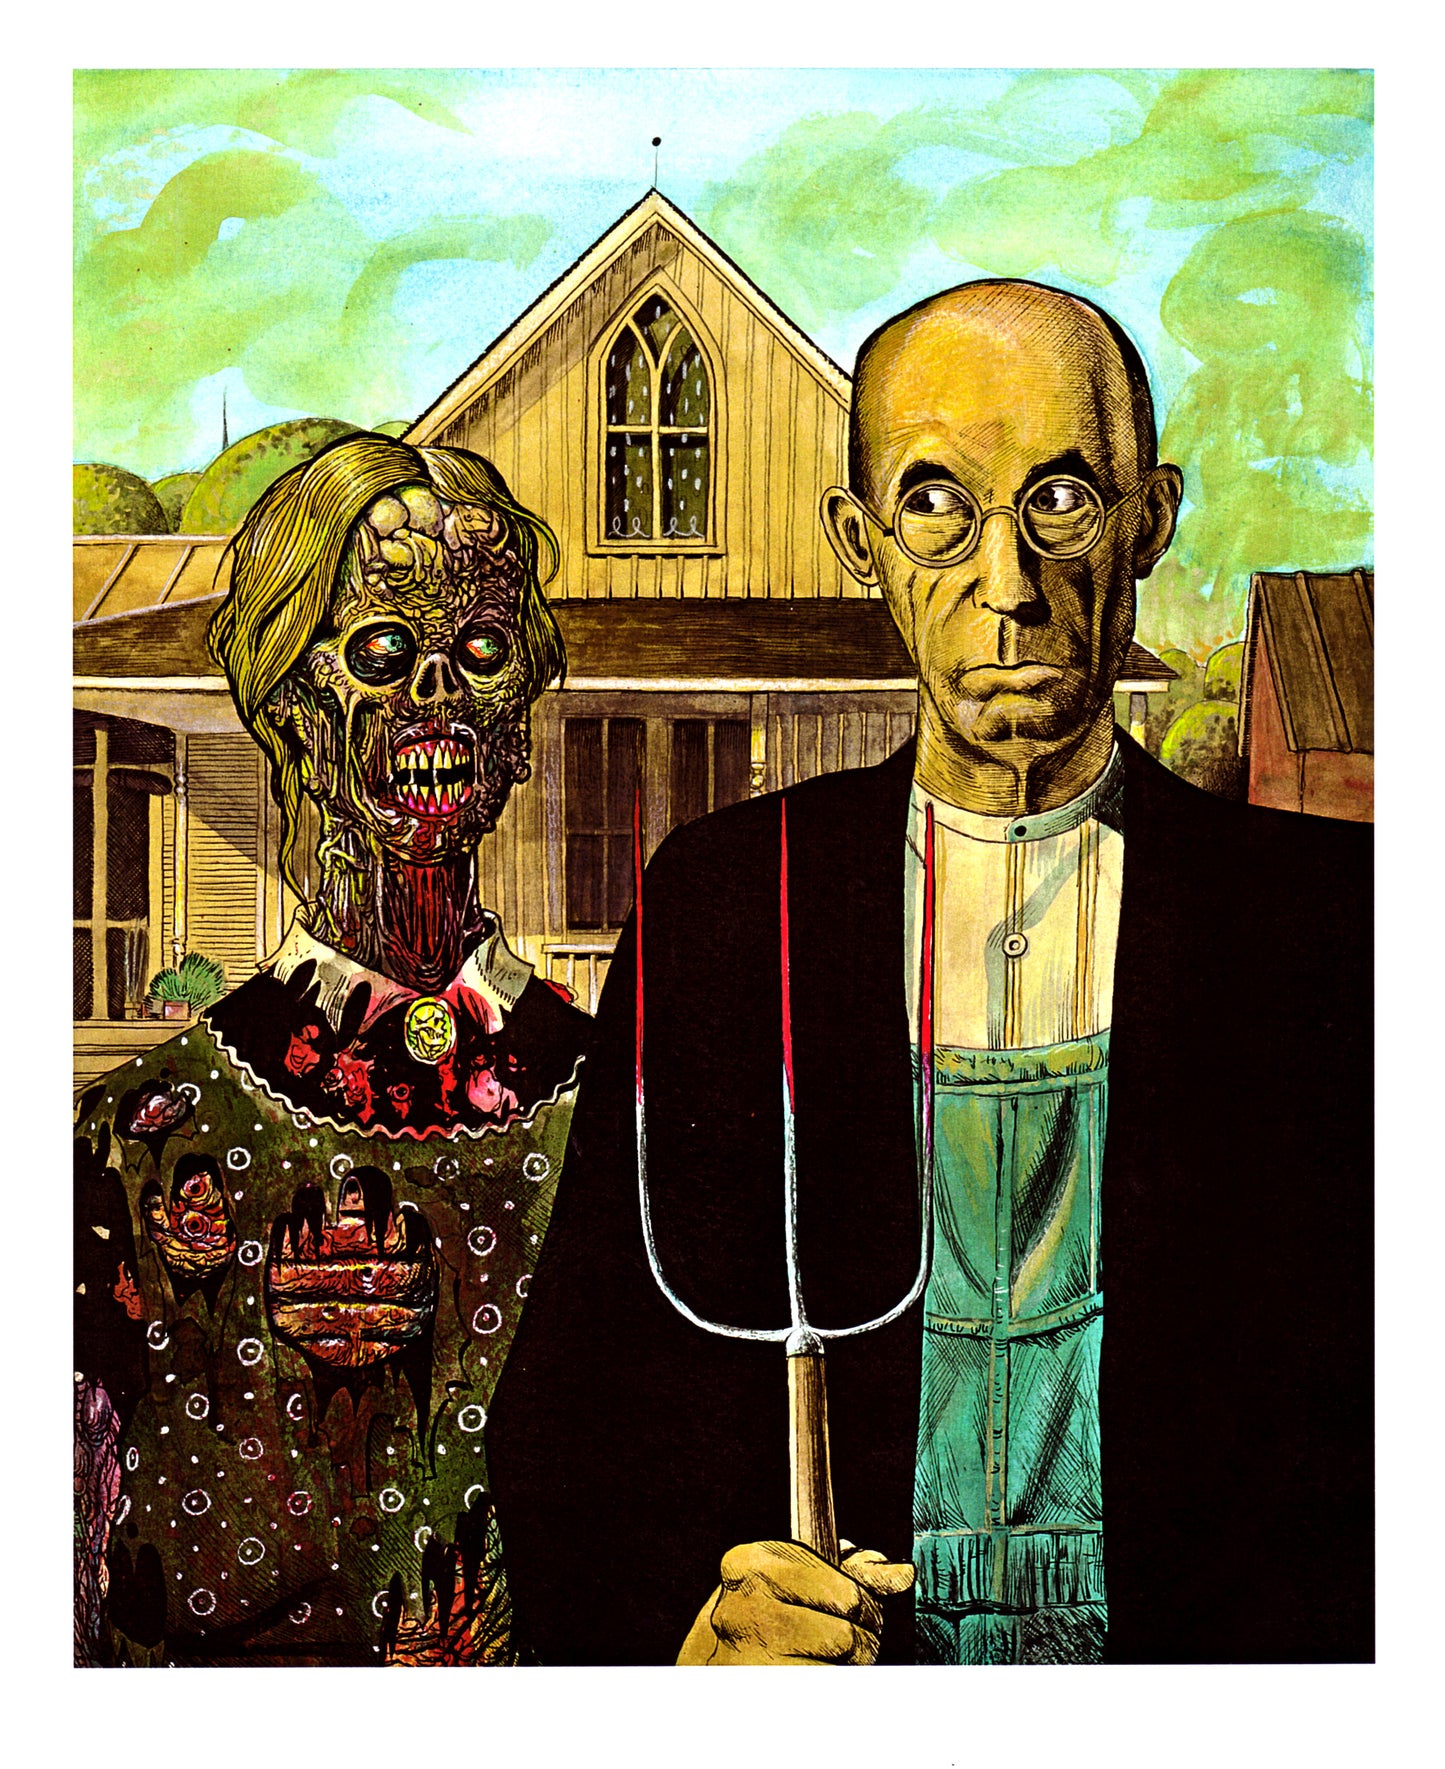 American Zombie Gothic